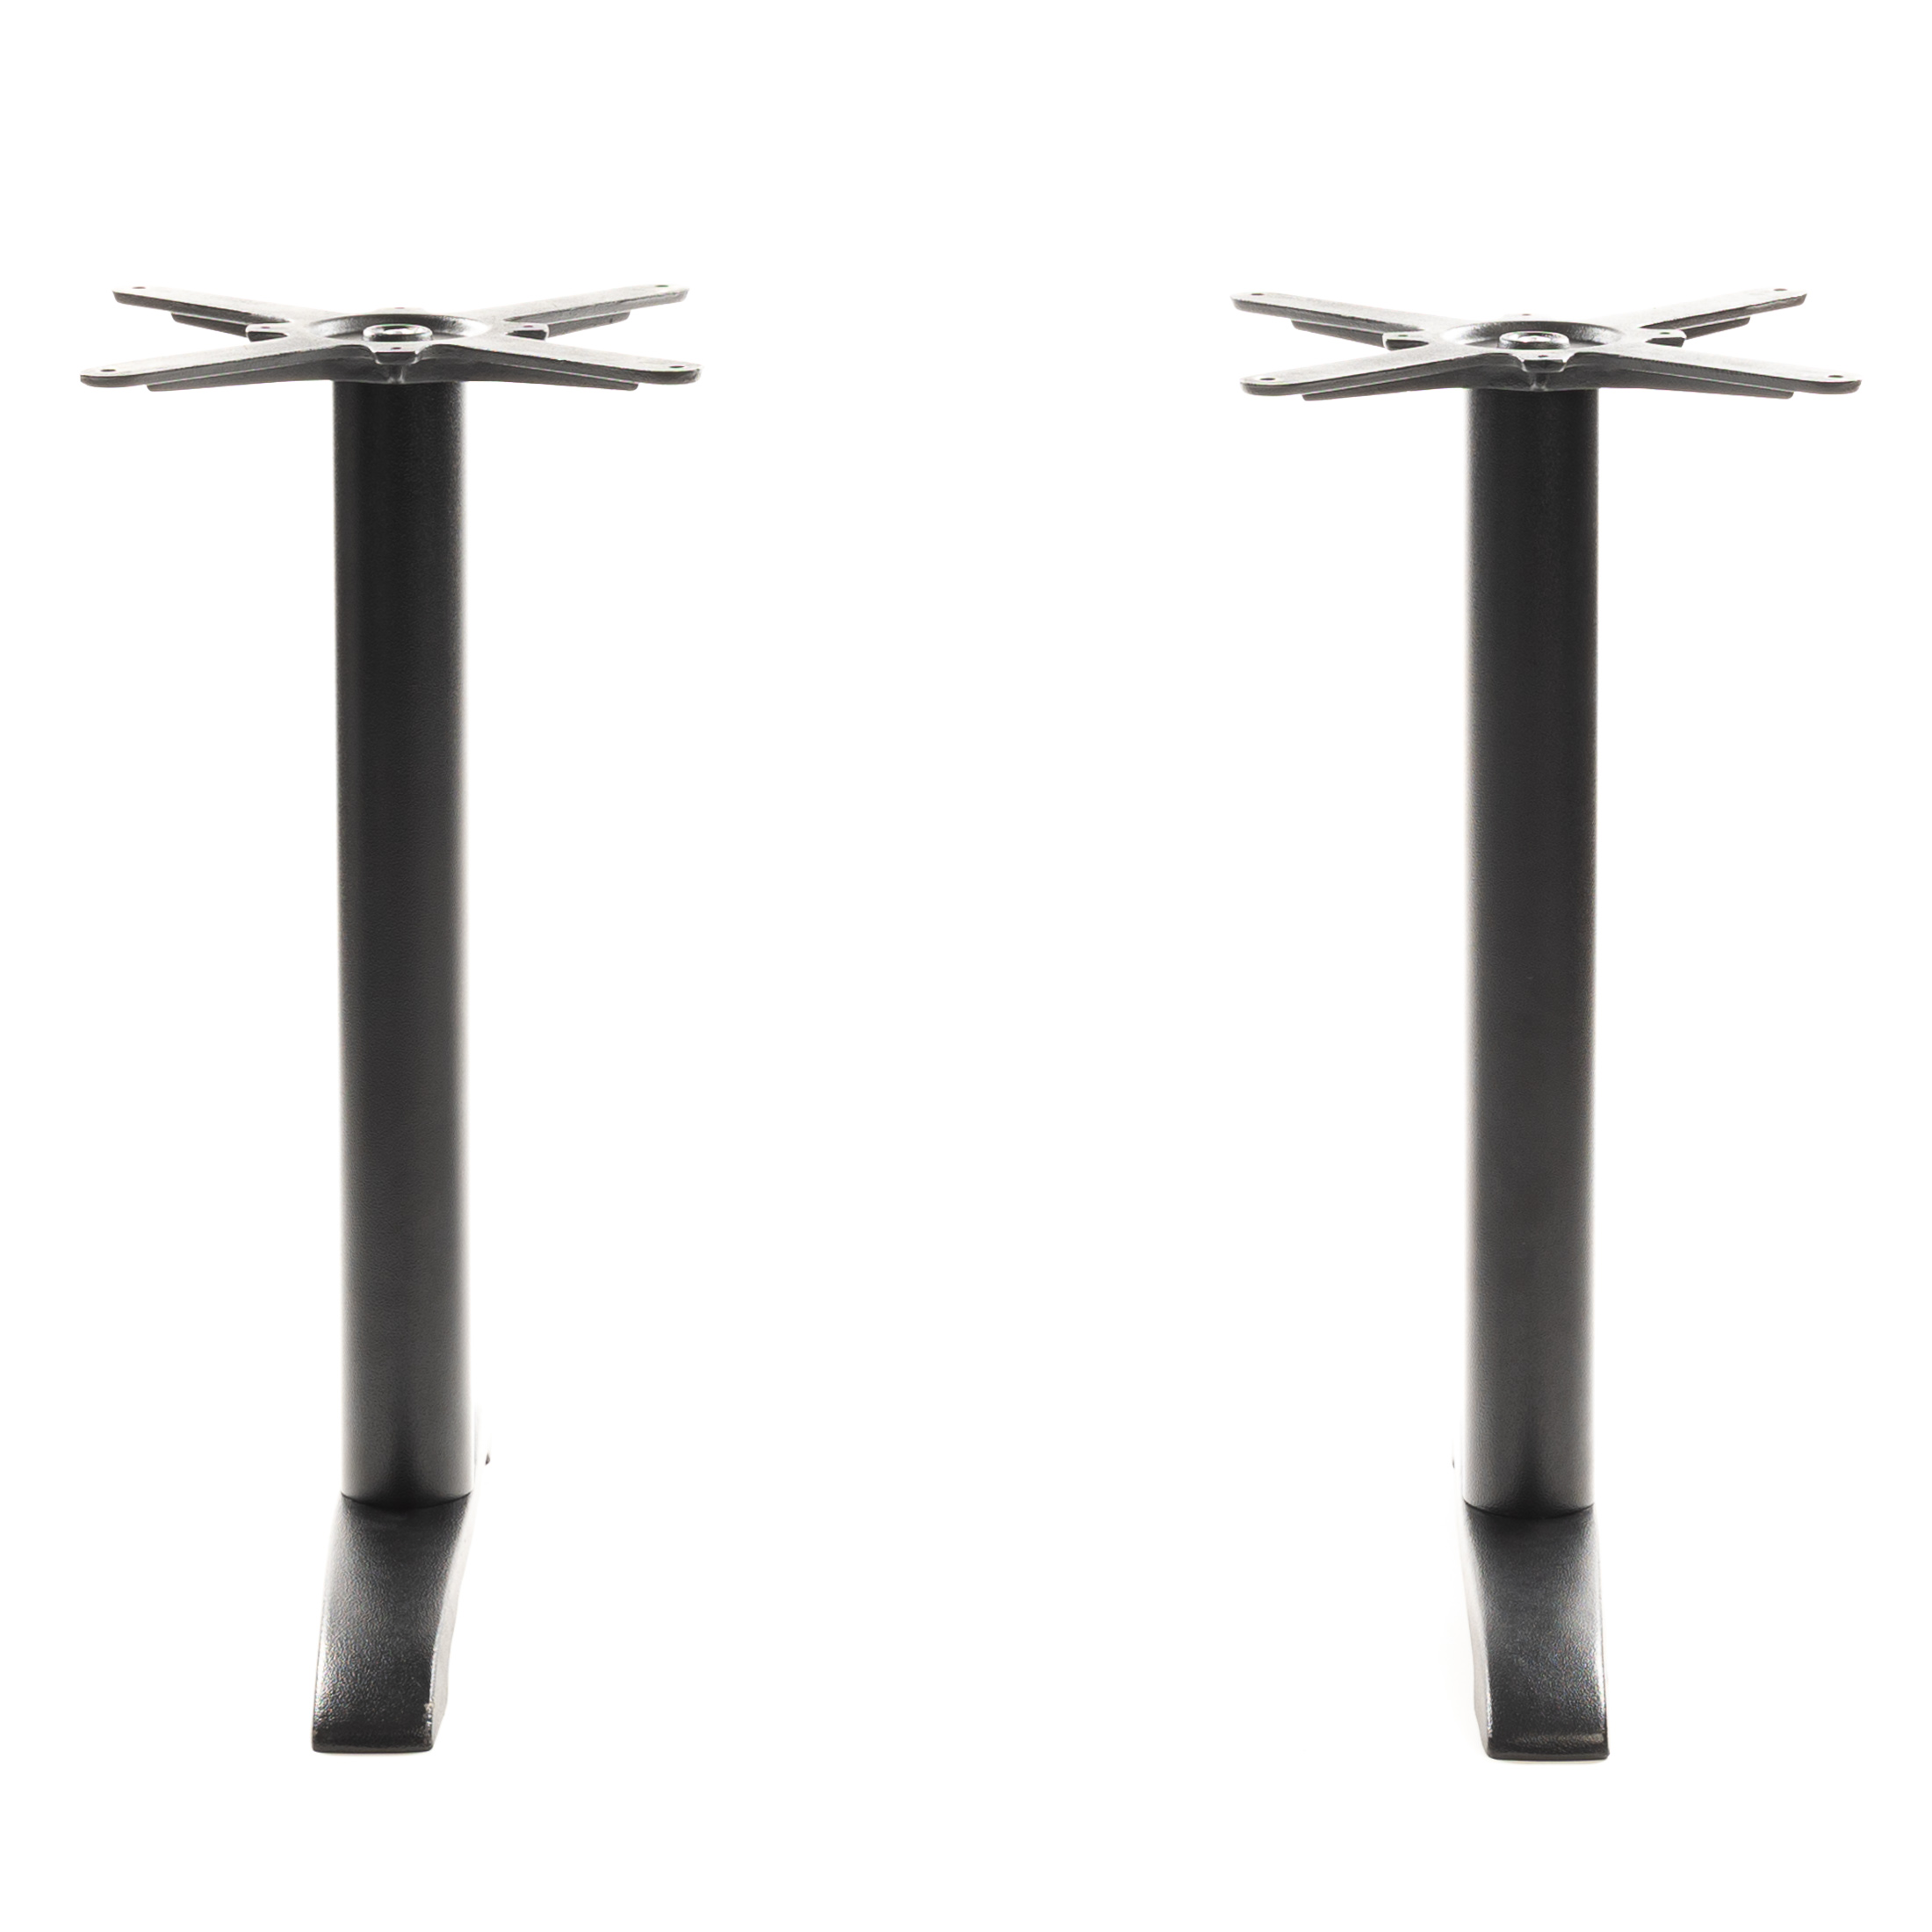 Gusseisen Tischgestell PJ7622 (Tischbein) mit 2 Einzelsäulen, pulverbeschichtet schwarz